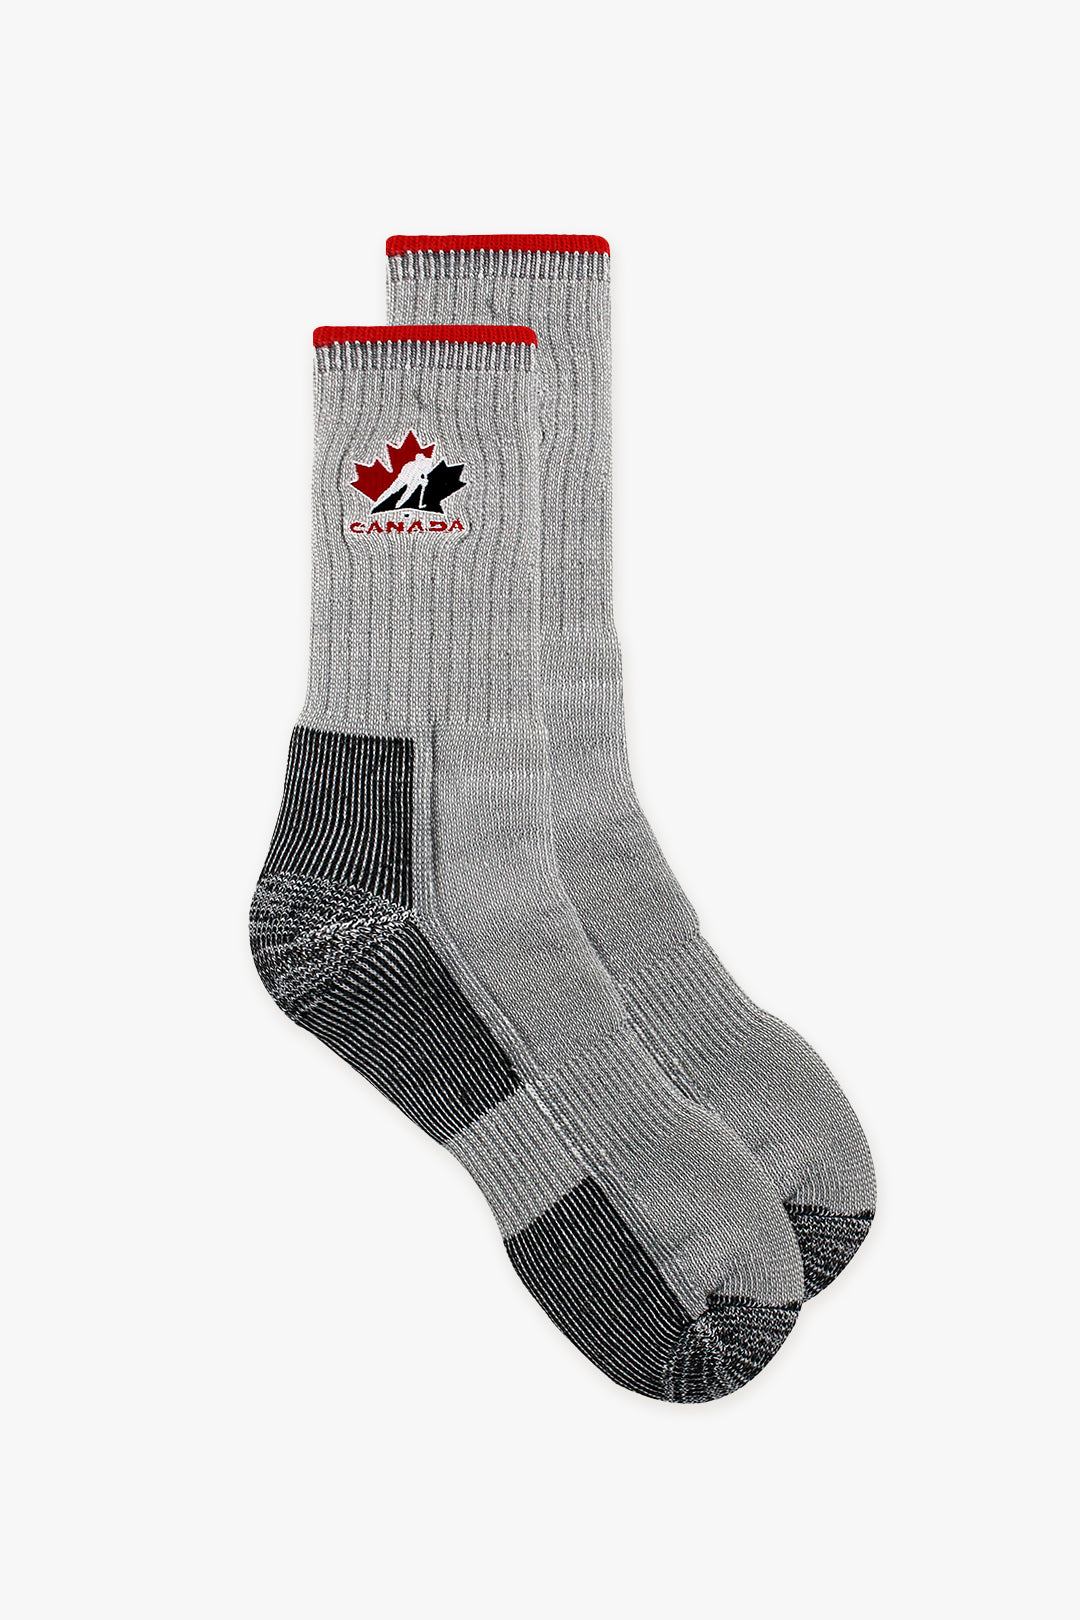 Hockey Canada Men's Trekking Socks